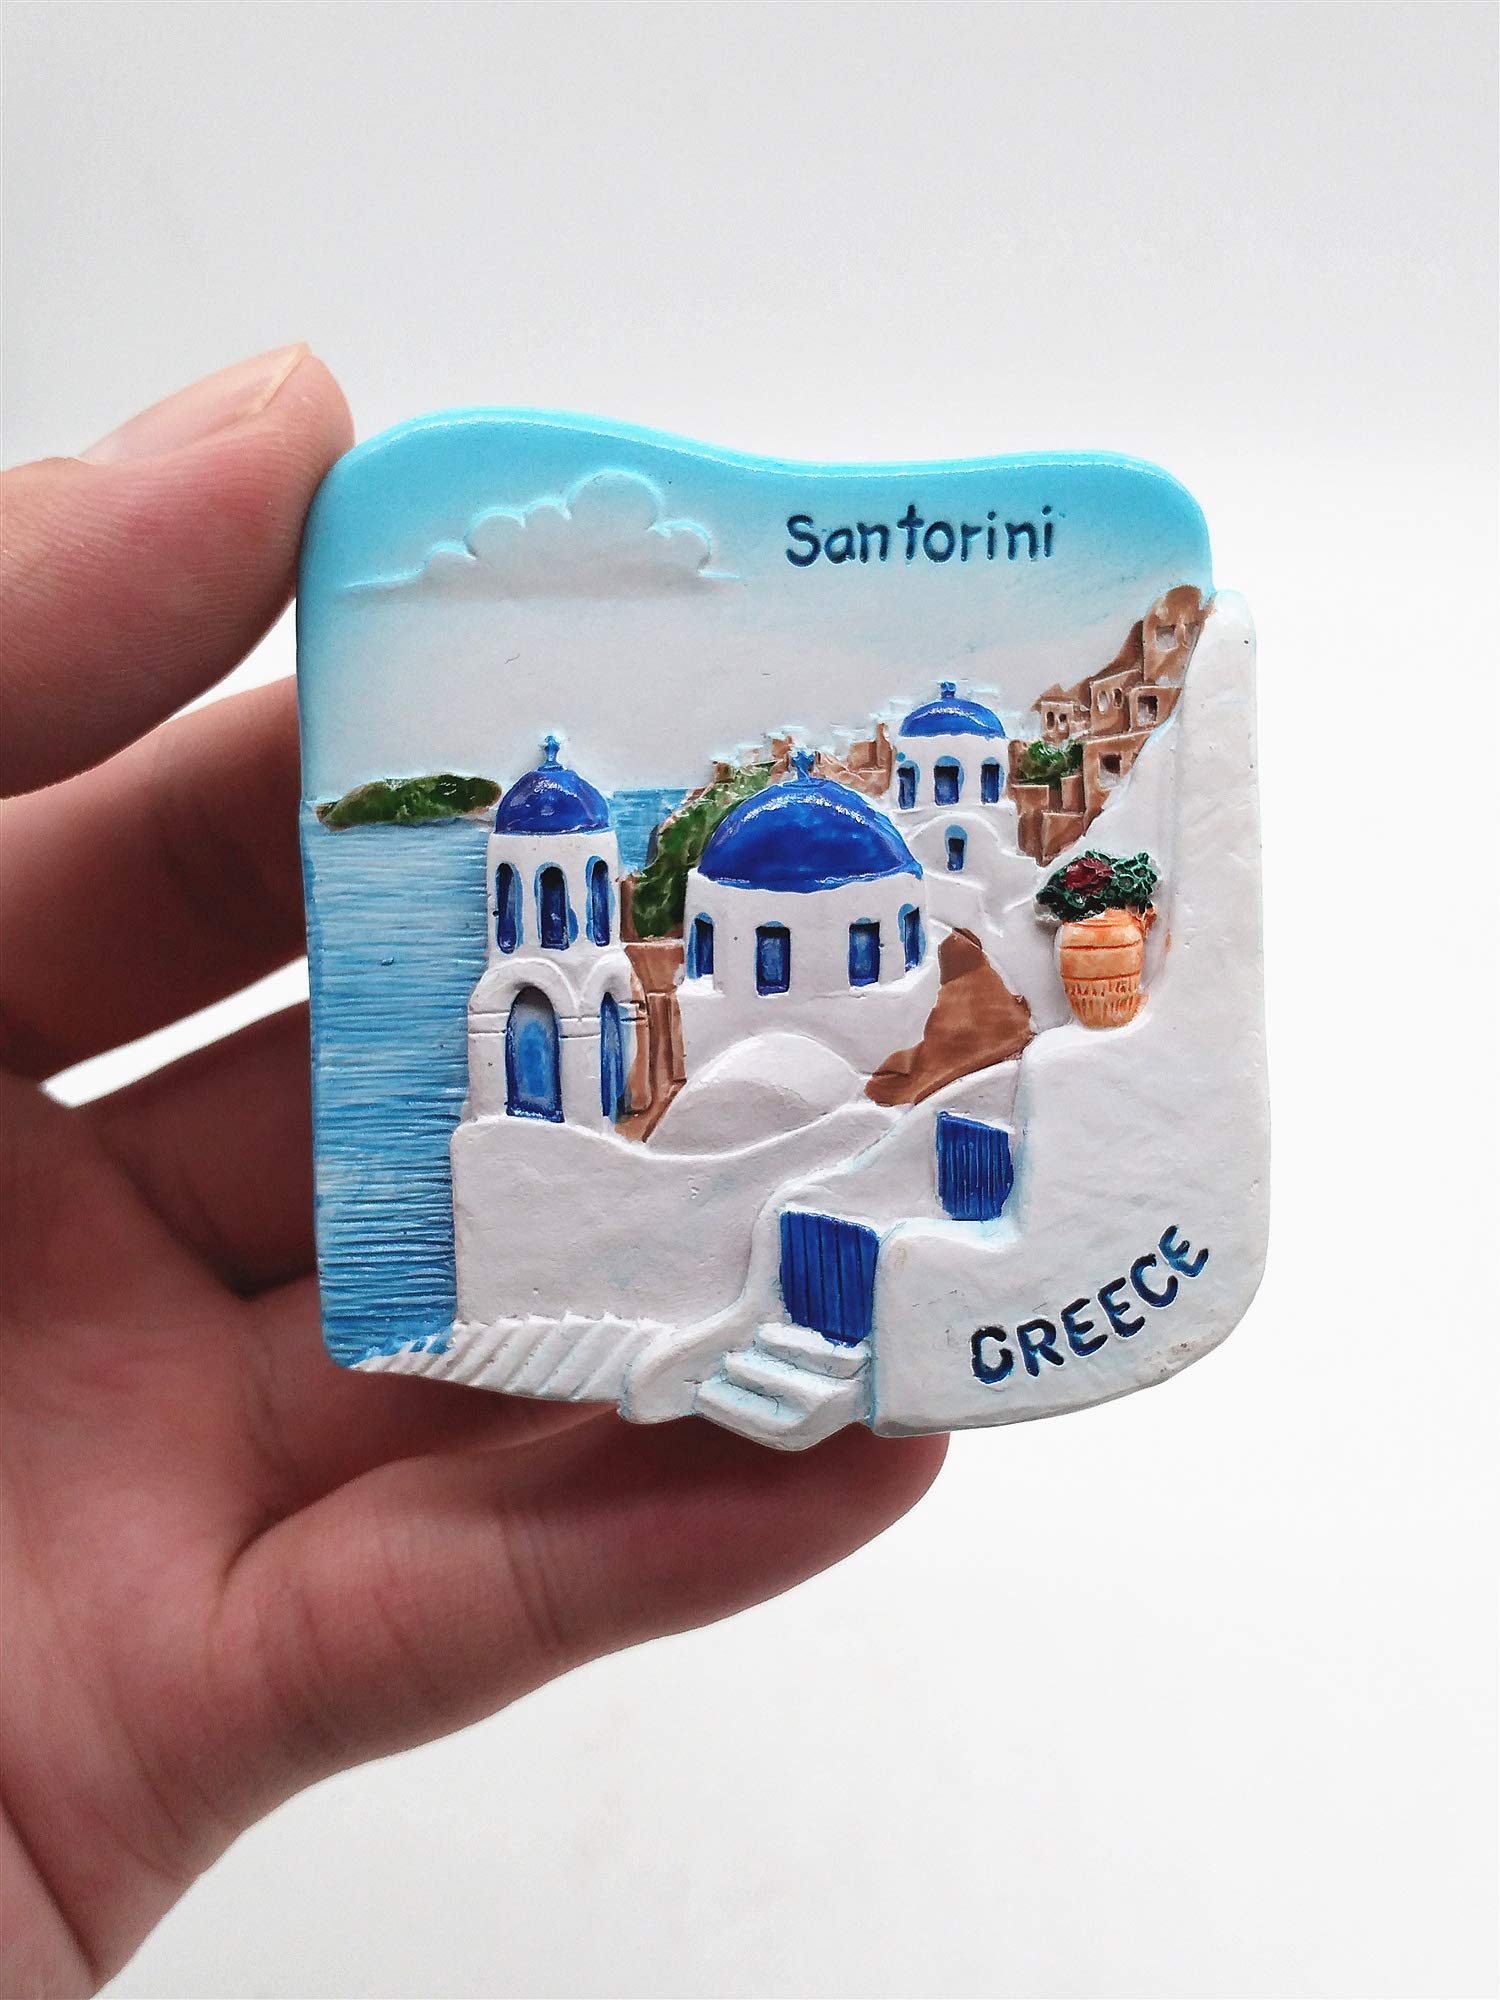 Santorini Greece 3D Fridge Magnet Tourist Souvenir Gift Home & Kitchen Decoration Magnetic Sticker Santorini Greece Refrigerator Magnet Collection